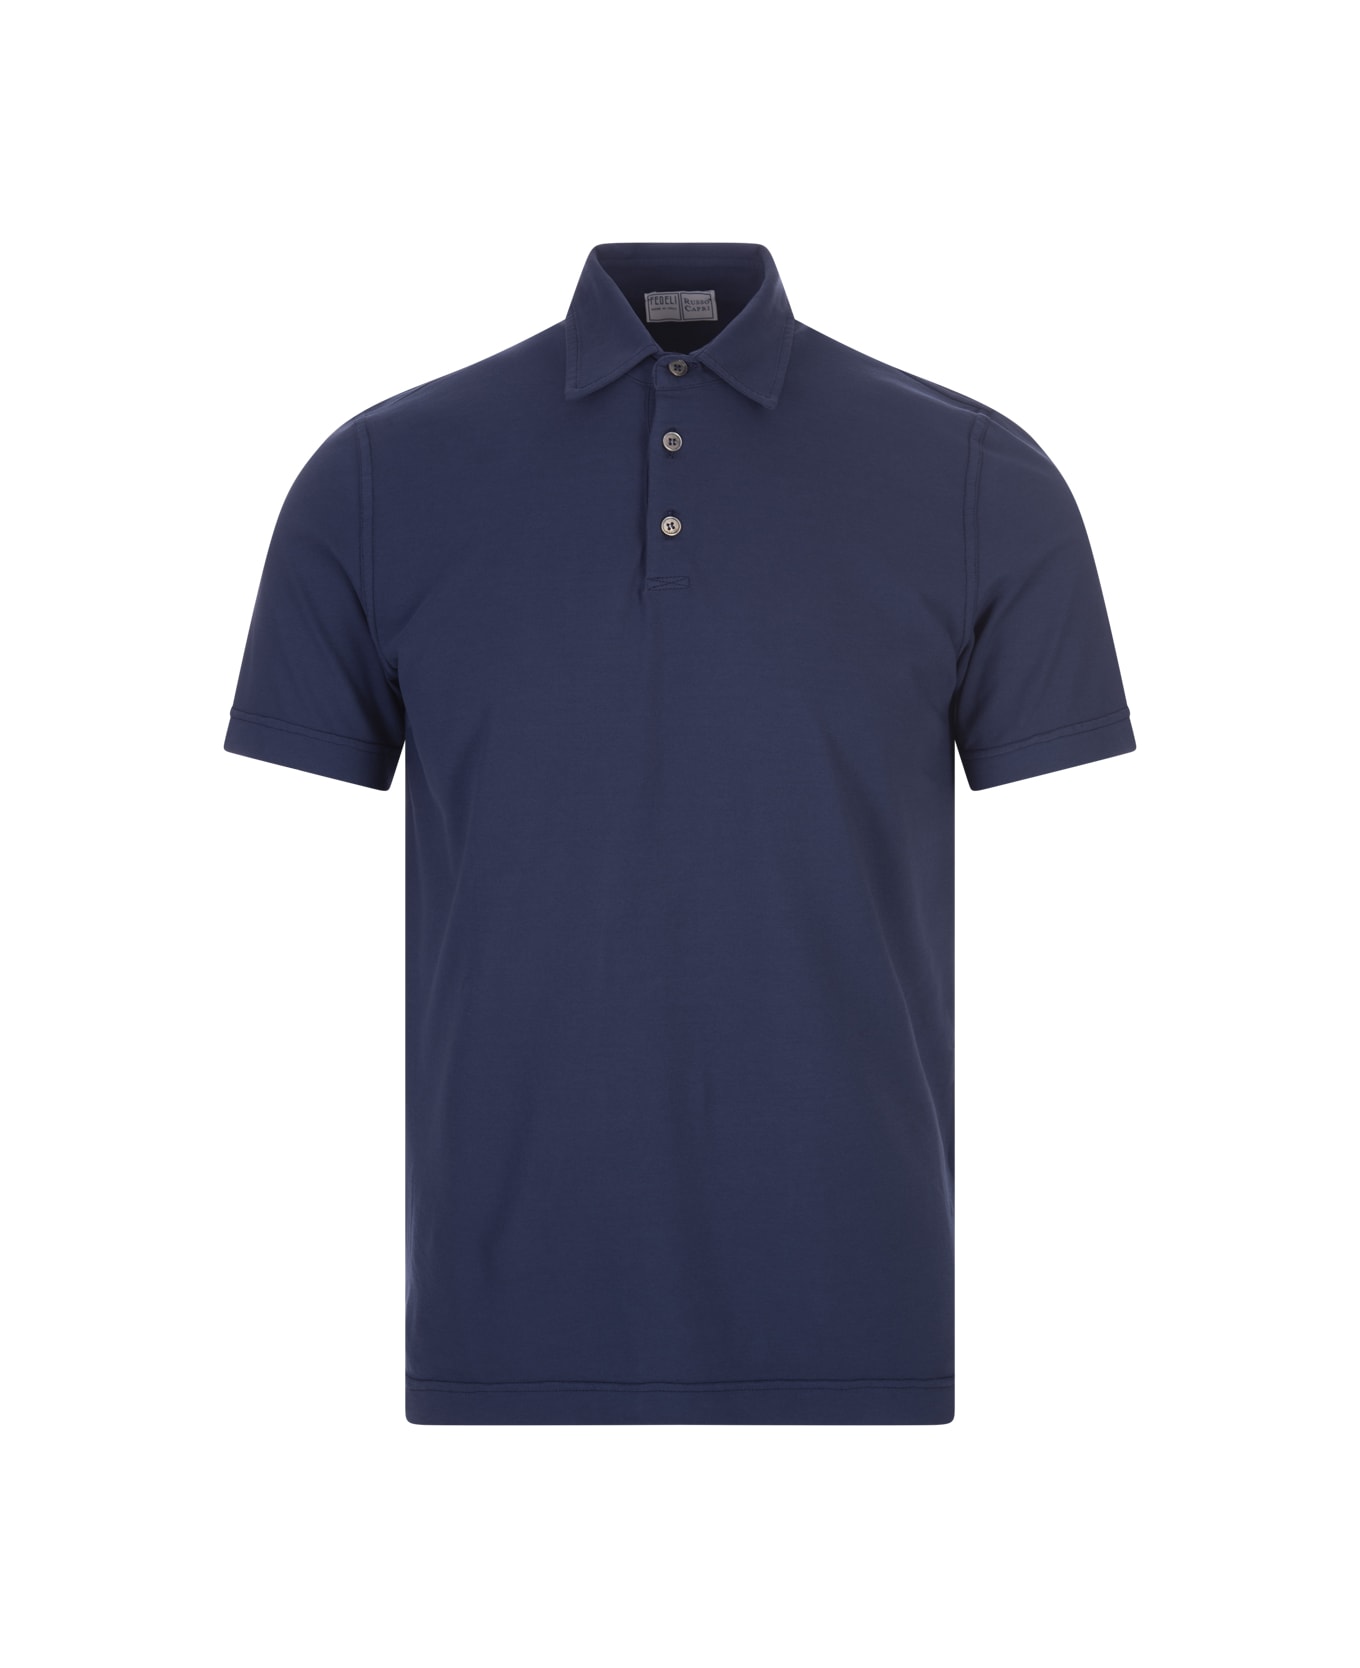 Fedeli Short-sleeved Polo 18mois Shirt In Dark Blue Cotton - Blue